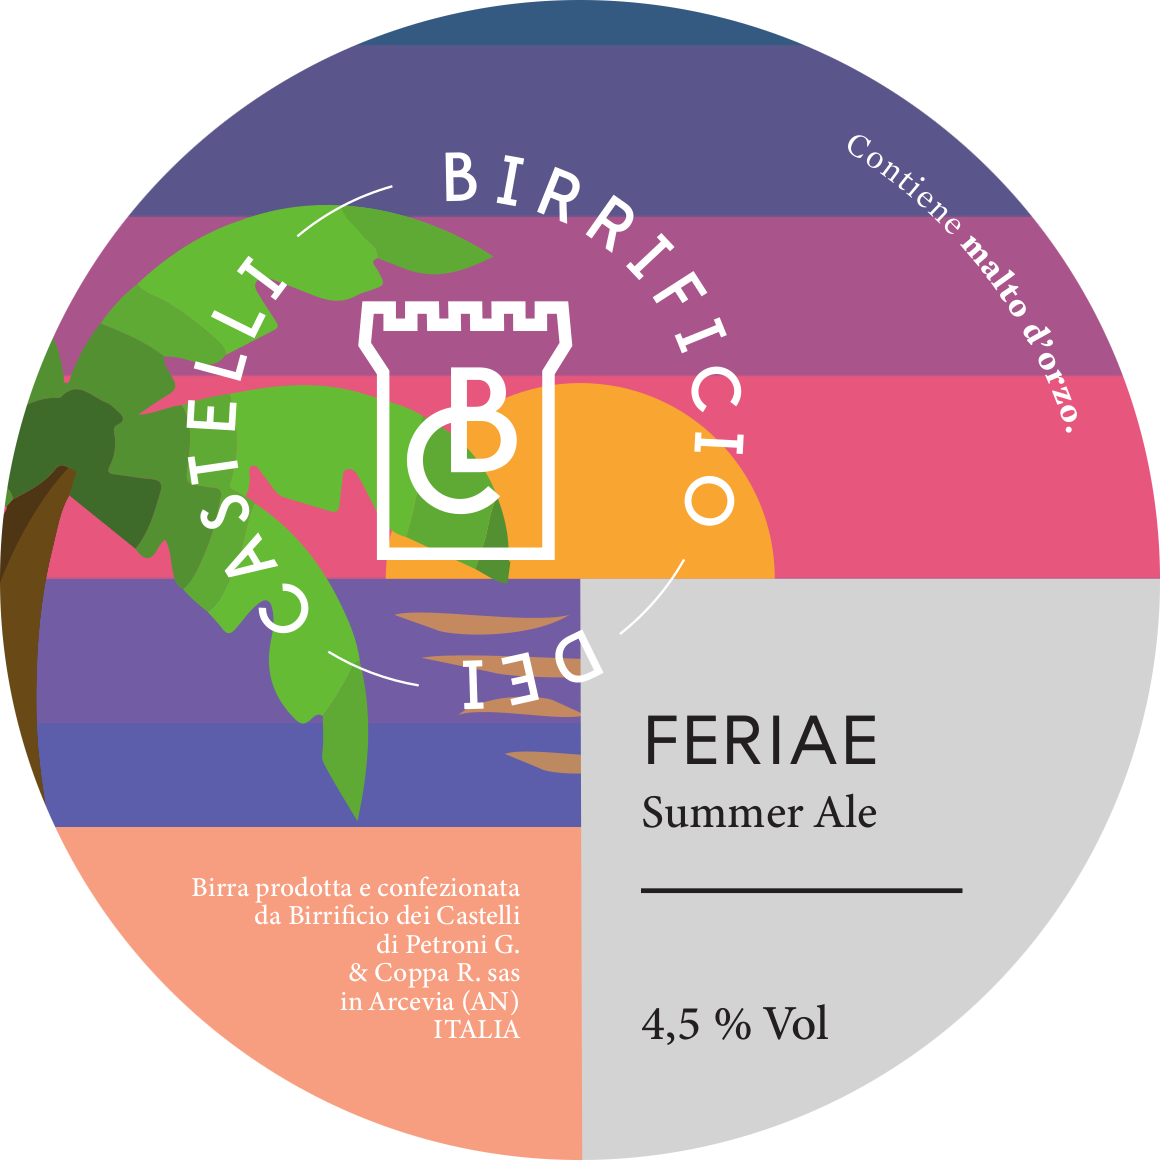 feriae è una birra artigianale, molto luppolata e profumata. acquista online birra o in arcevia nelle marche